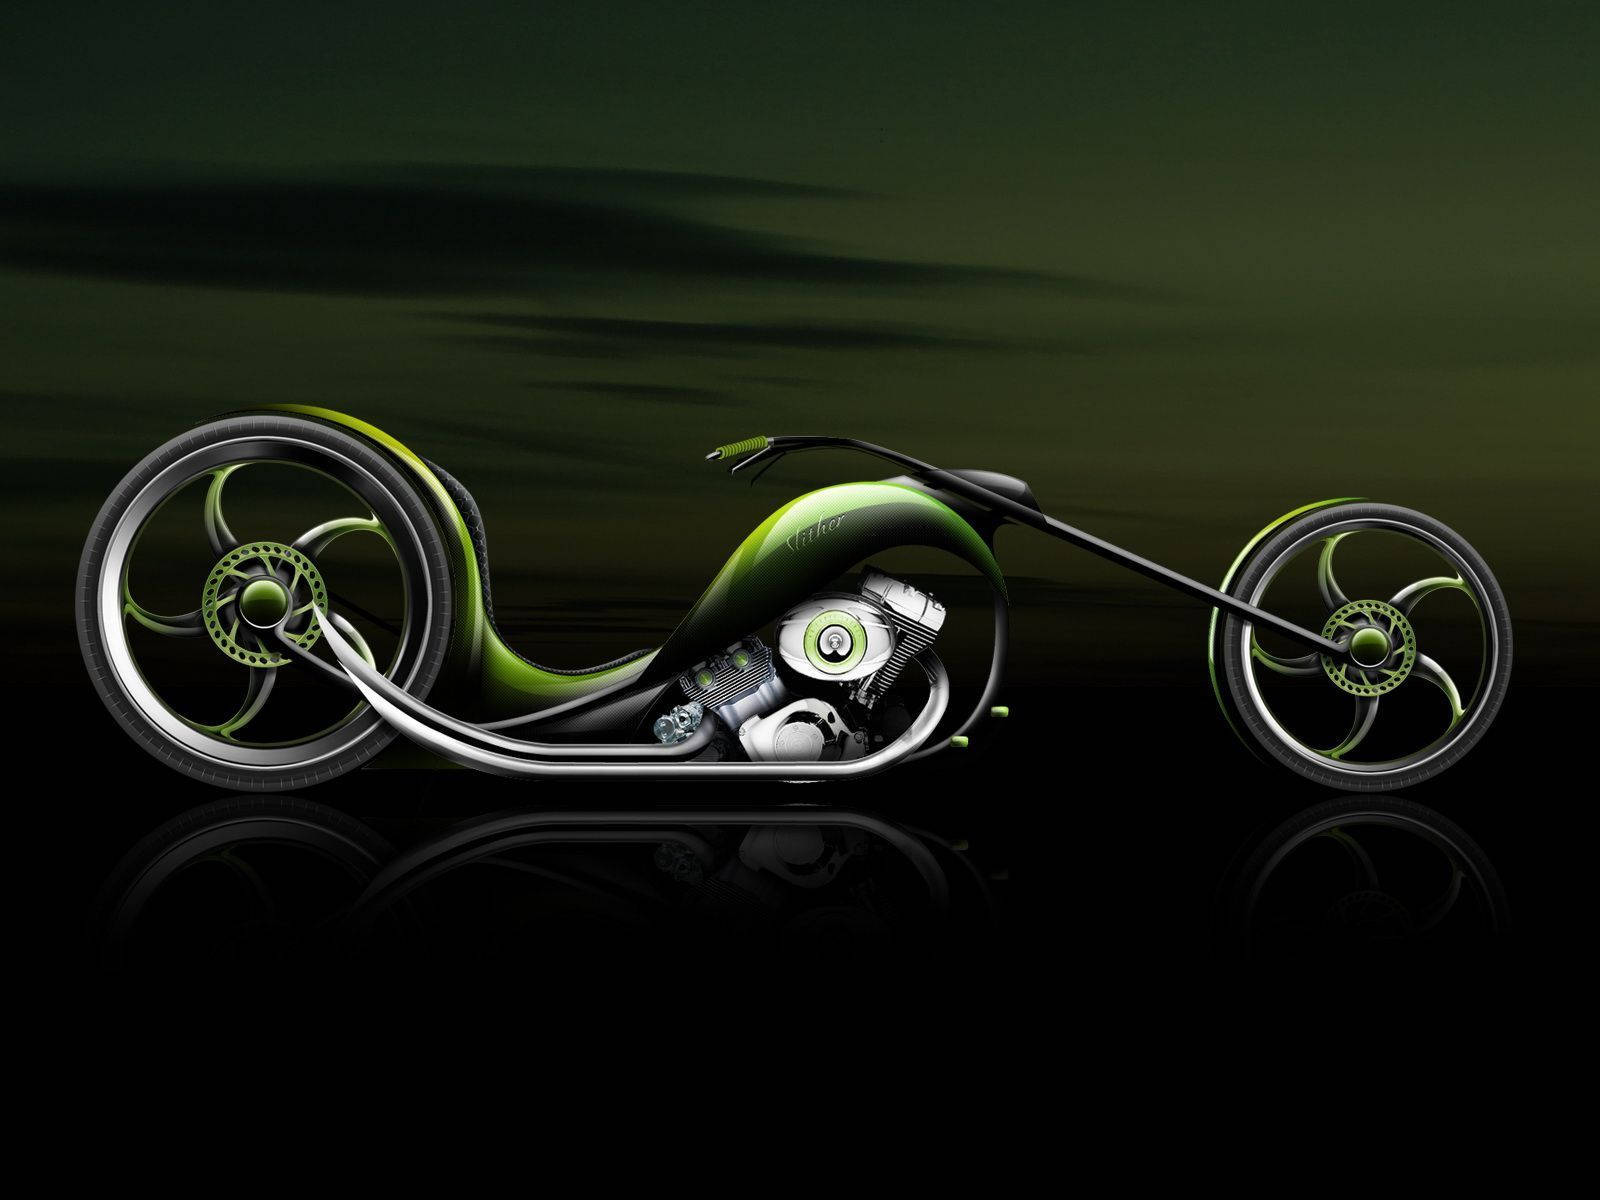 Futuristic Chopper Cool Bike Digital Art Background